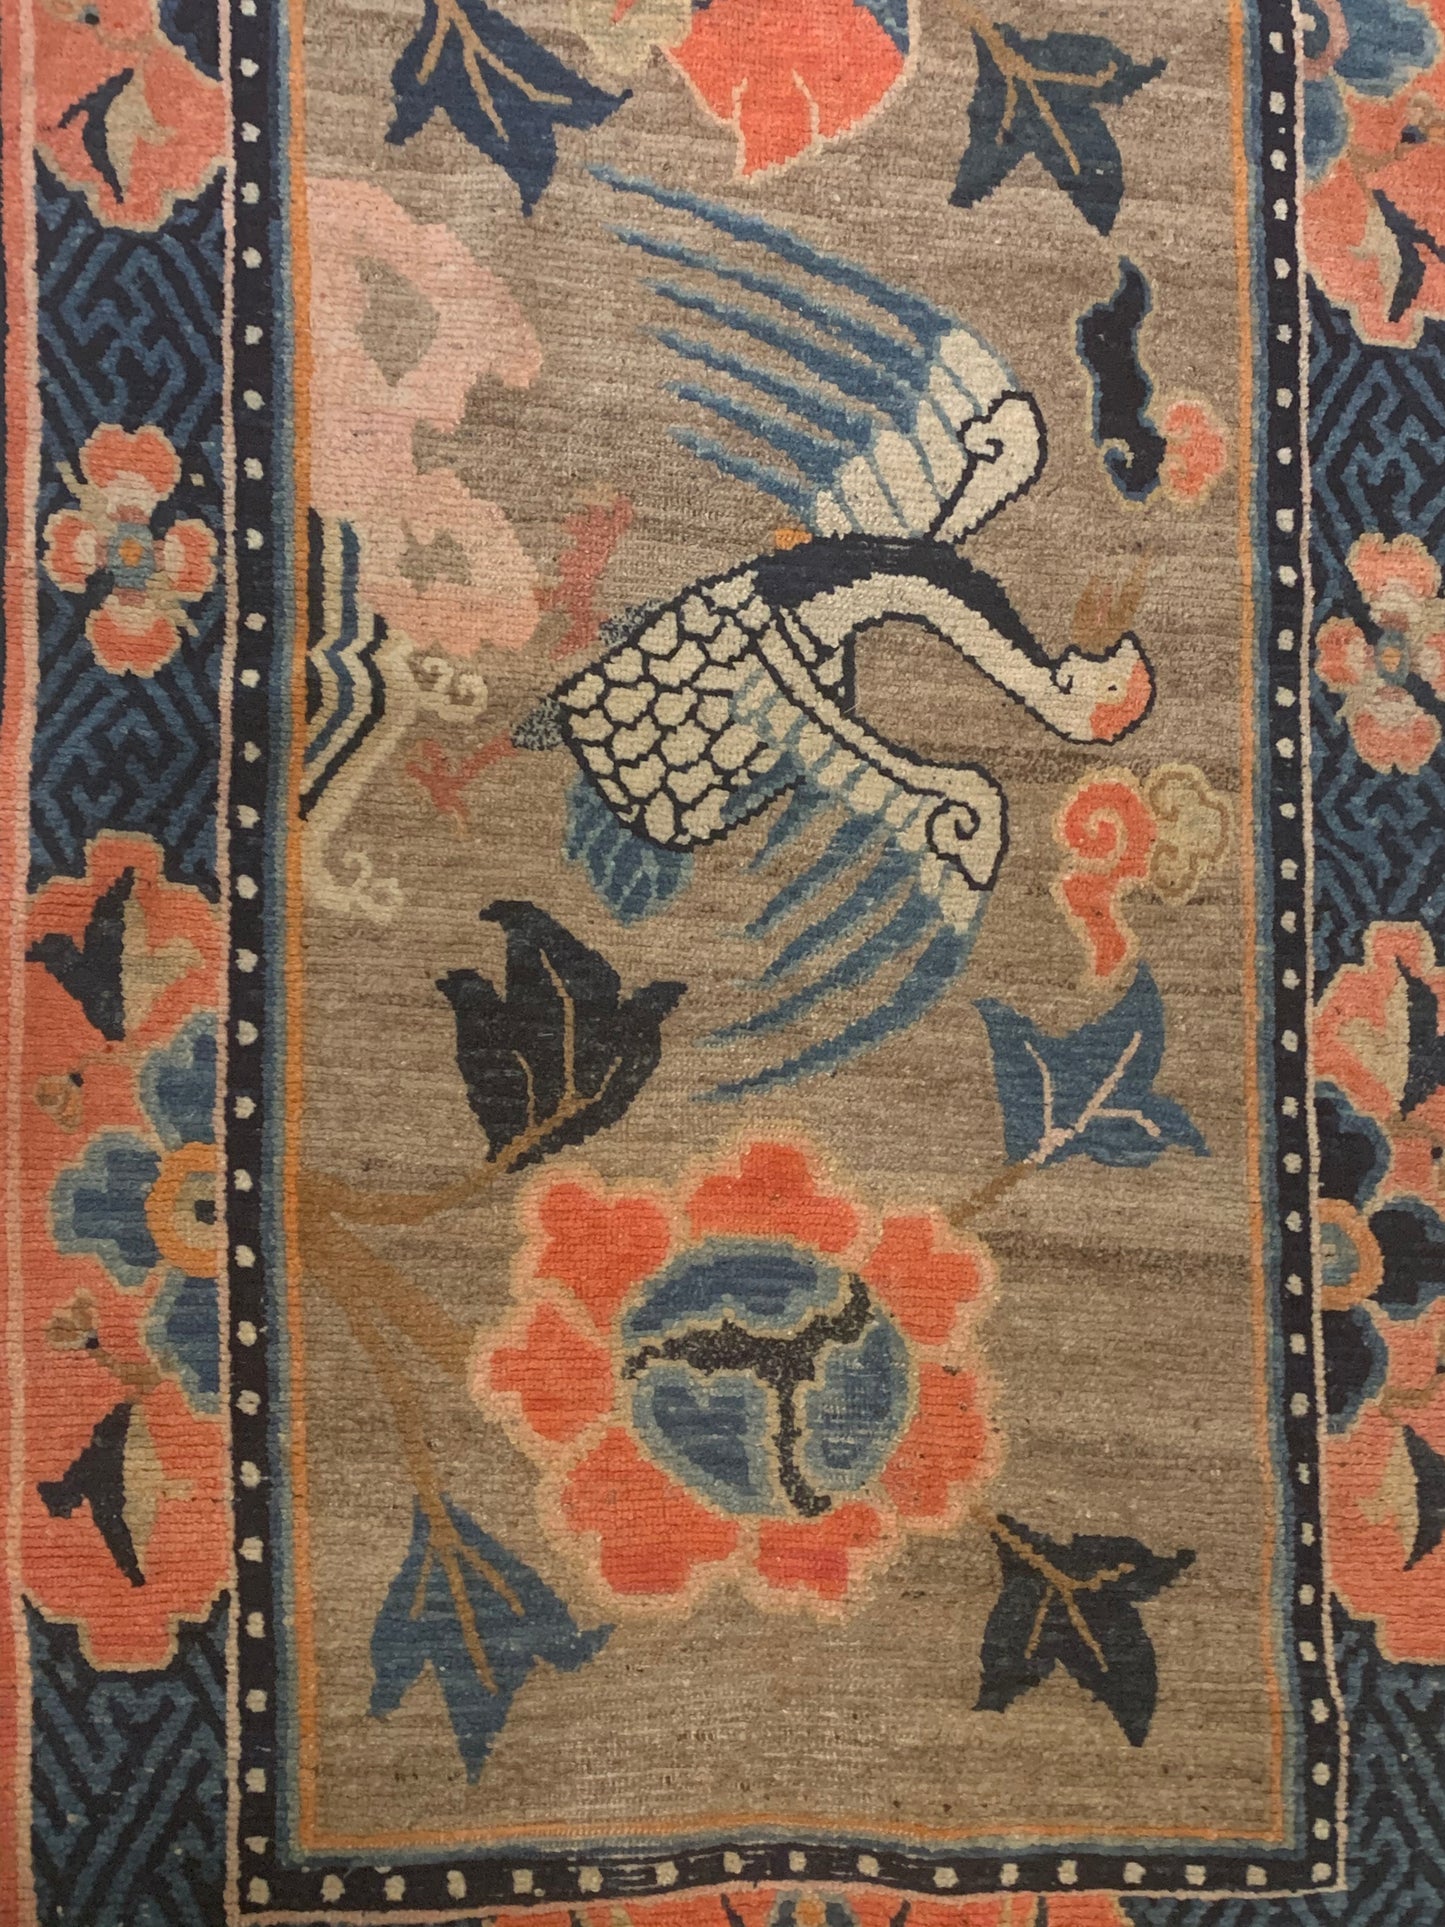 An antique Tibetan rug